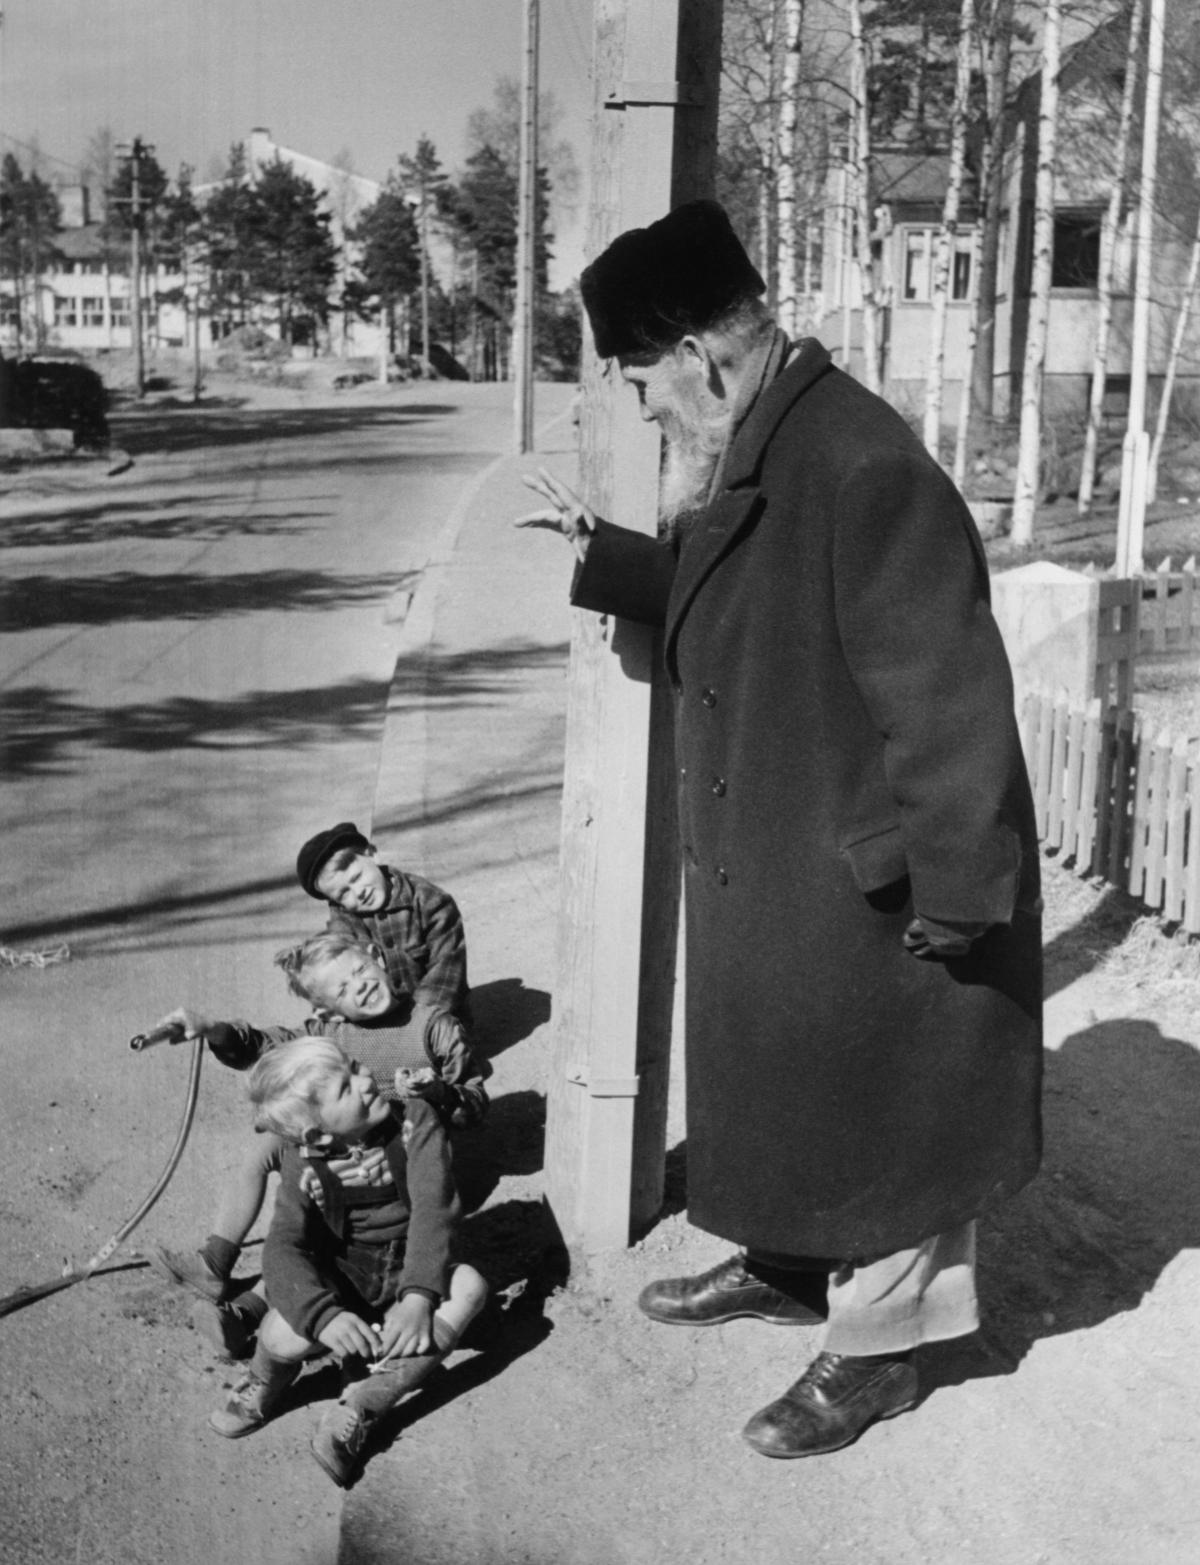 Isokokoinen vanhempi pitkäpartainen mies mustassa takissa tervehtii käsi kohotettuna kolmea lasta, jotka istuvat jalkakäytävän reunalla. Taustalla näkyy rakennuksia ja koivuja.